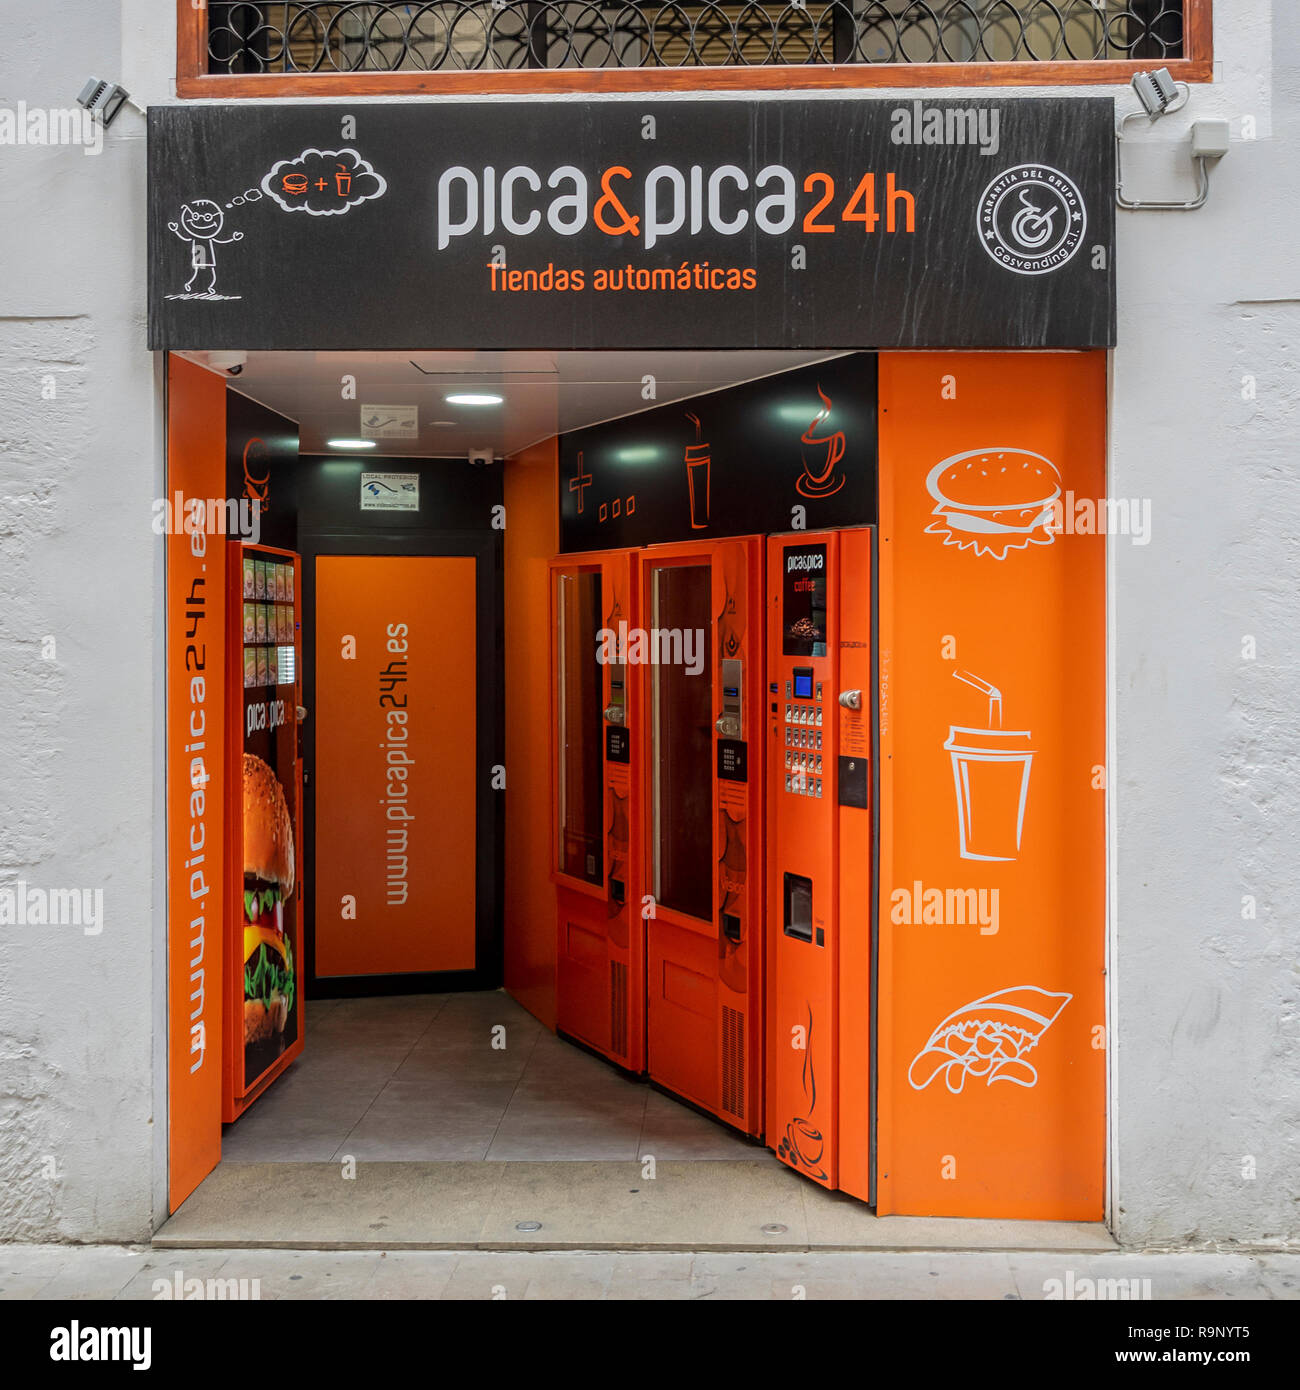 VALENCIA, SPANIEN - 24. MAI 2018: 24-Stunden-Abholpunkt für Online-Einkäufe im Stadtzentrum Stockfoto